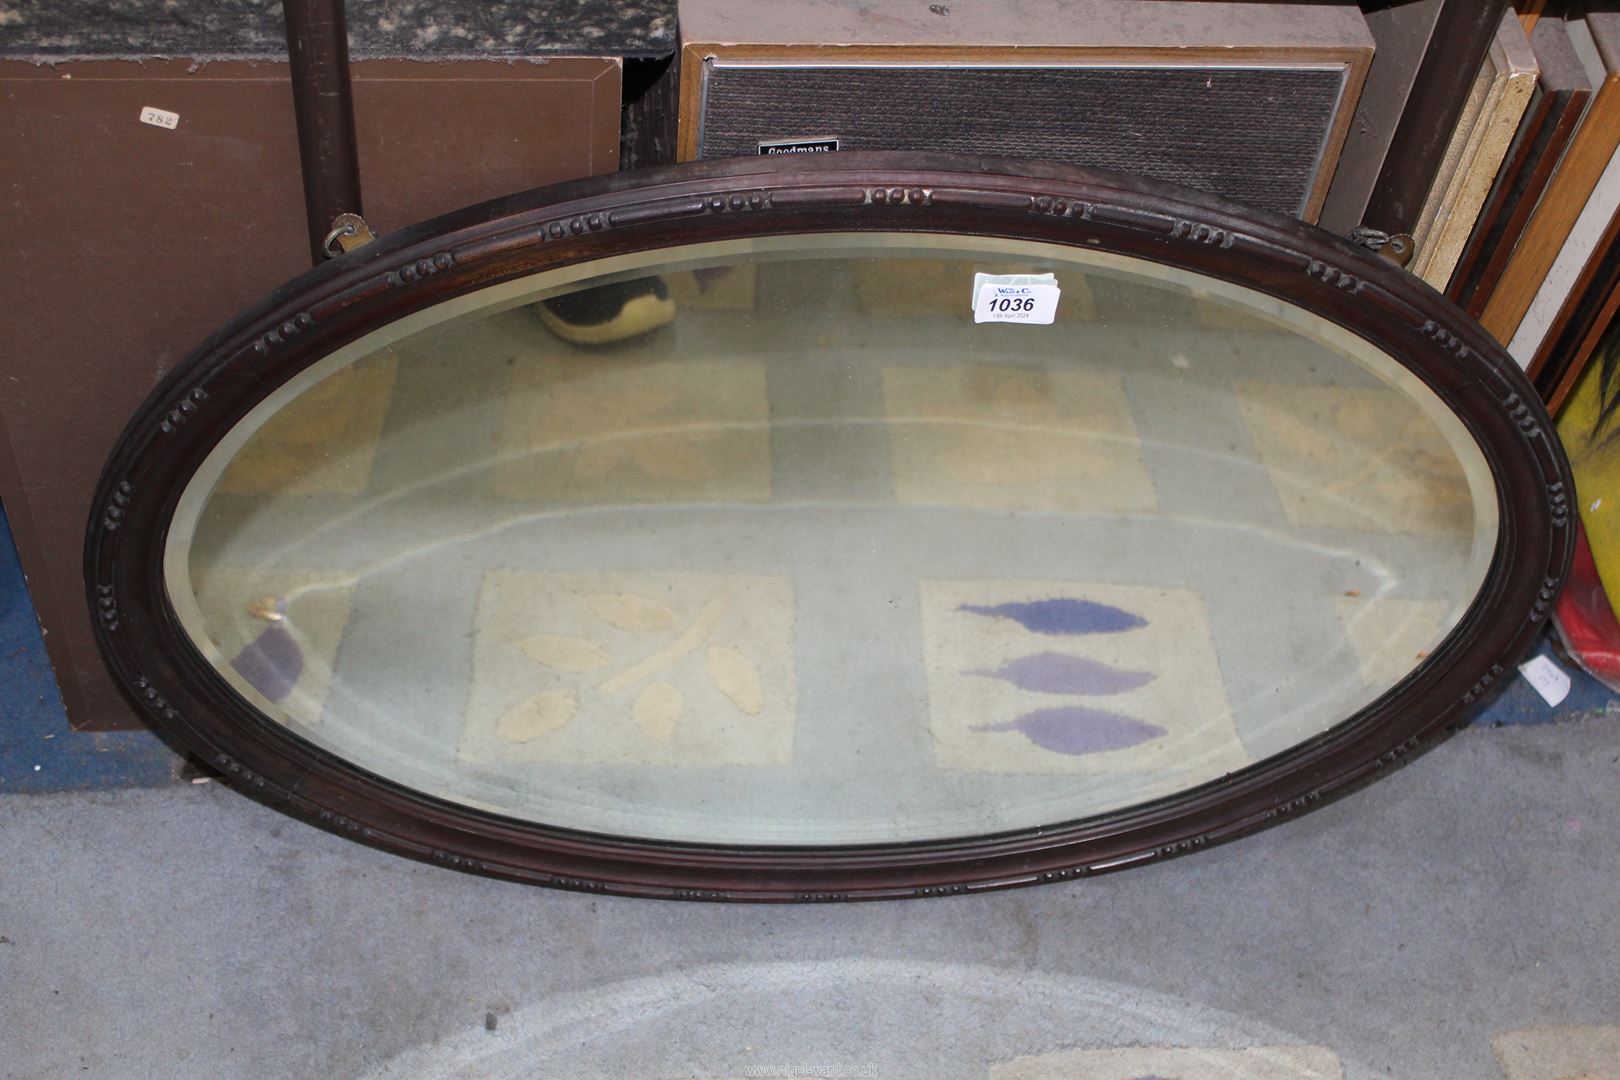 A Mahogany oval framed mirror, 30" x 20".